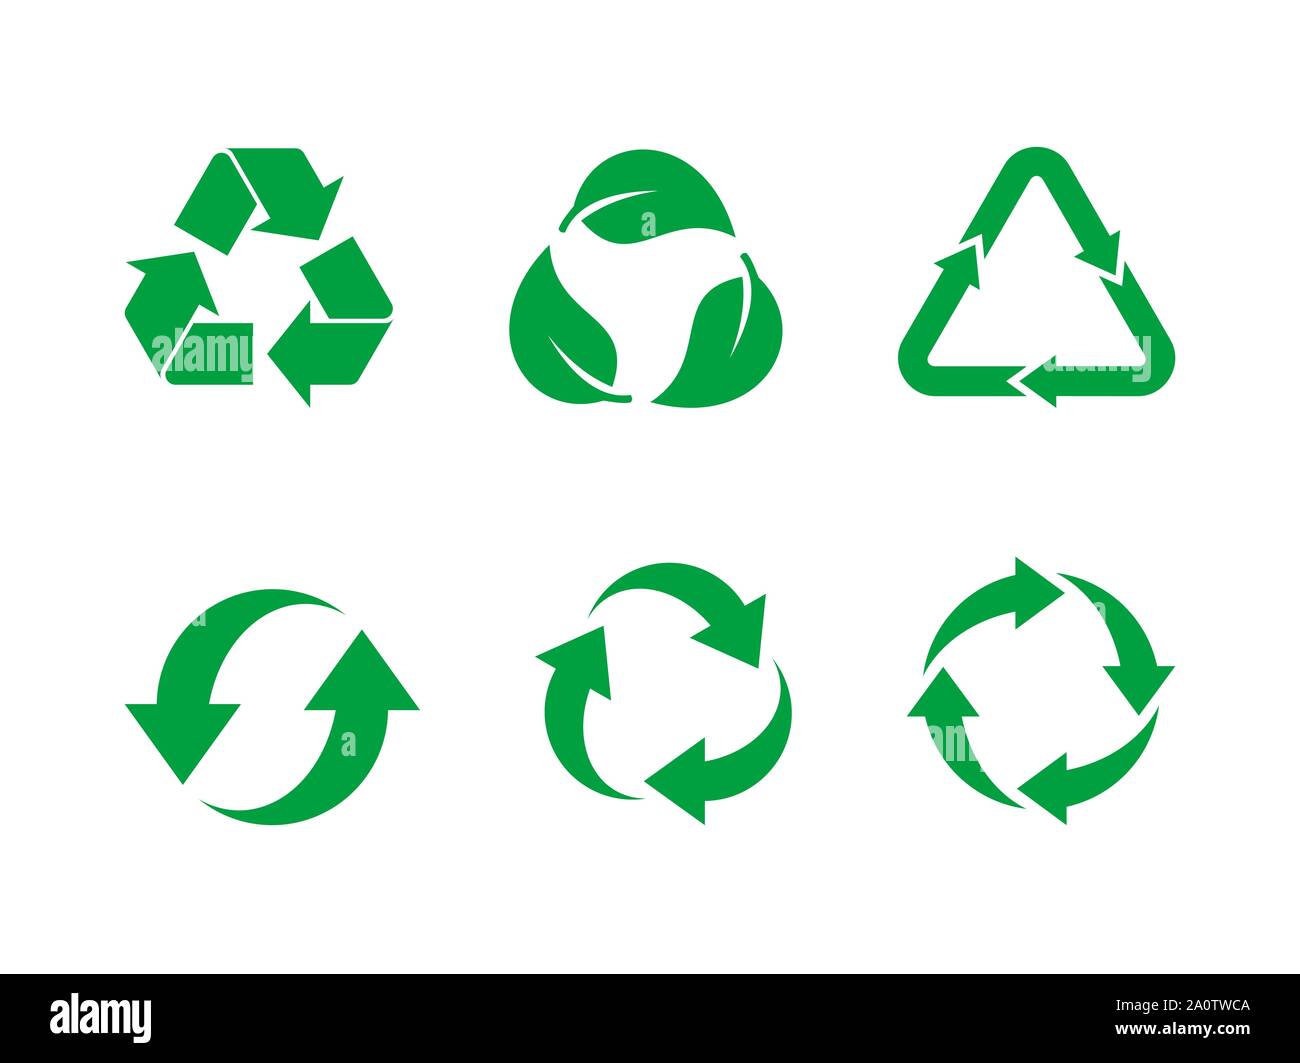 Le vert réutilisent le vector set. Réutilisez le signe vert situé sur fond blanc. Collection de 6 icônes de recyclage différentes. La réutilisation, renouveler, le recyclage des matériaux Illustration de Vecteur